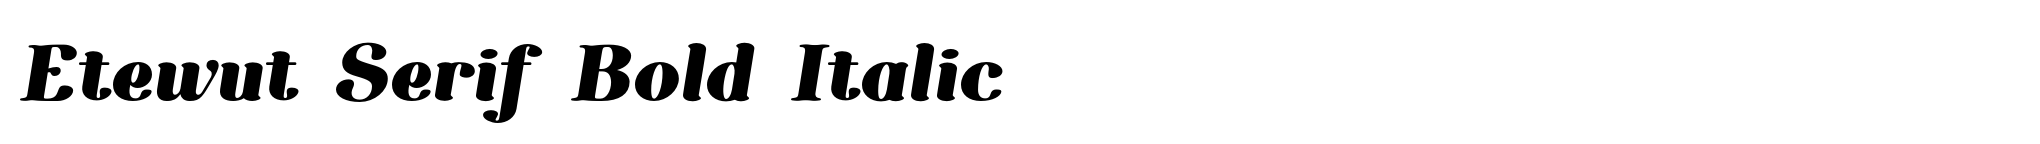 Etewut Serif Bold Italic image